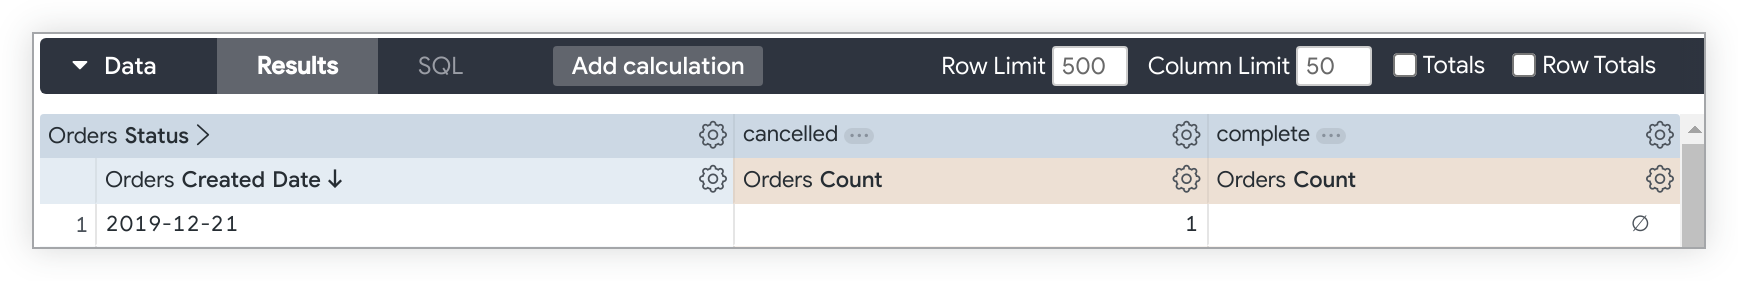 注文ステータスフィールドの値「キャンセル」と「完了」でピボットされた、注文作成日と注文数で、クエリを検索します。
